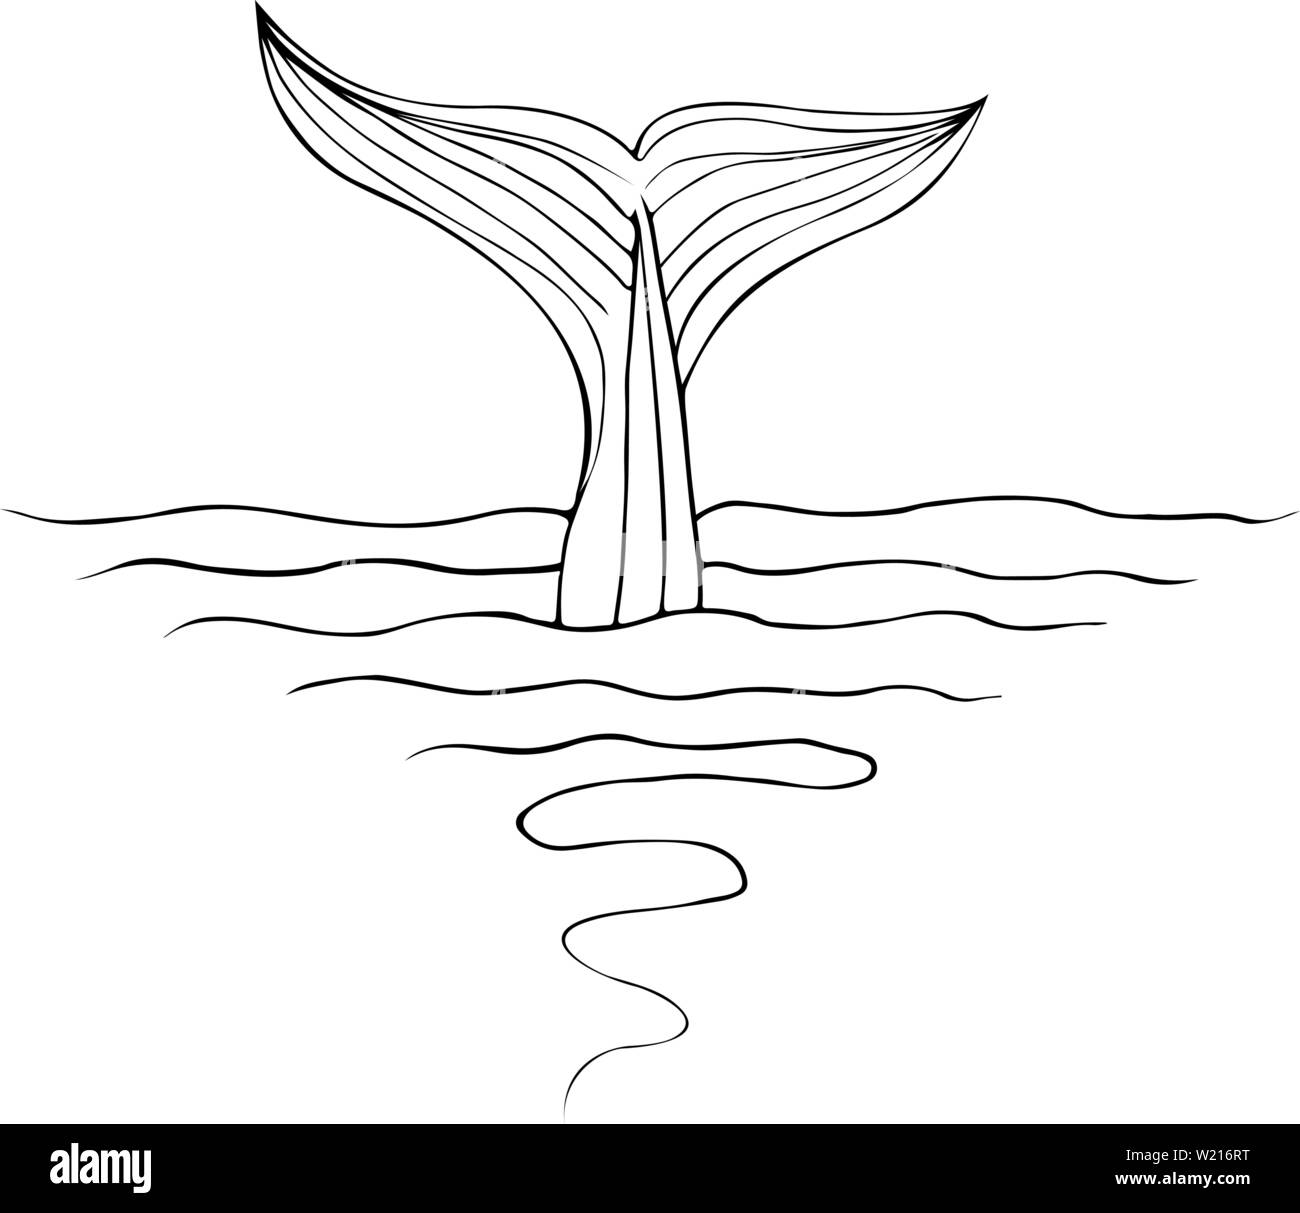 Abstract hand drawn whale tail isolé sur fond blanc. Vector illustration. Croquis du dessin au trait. Illustration de Vecteur